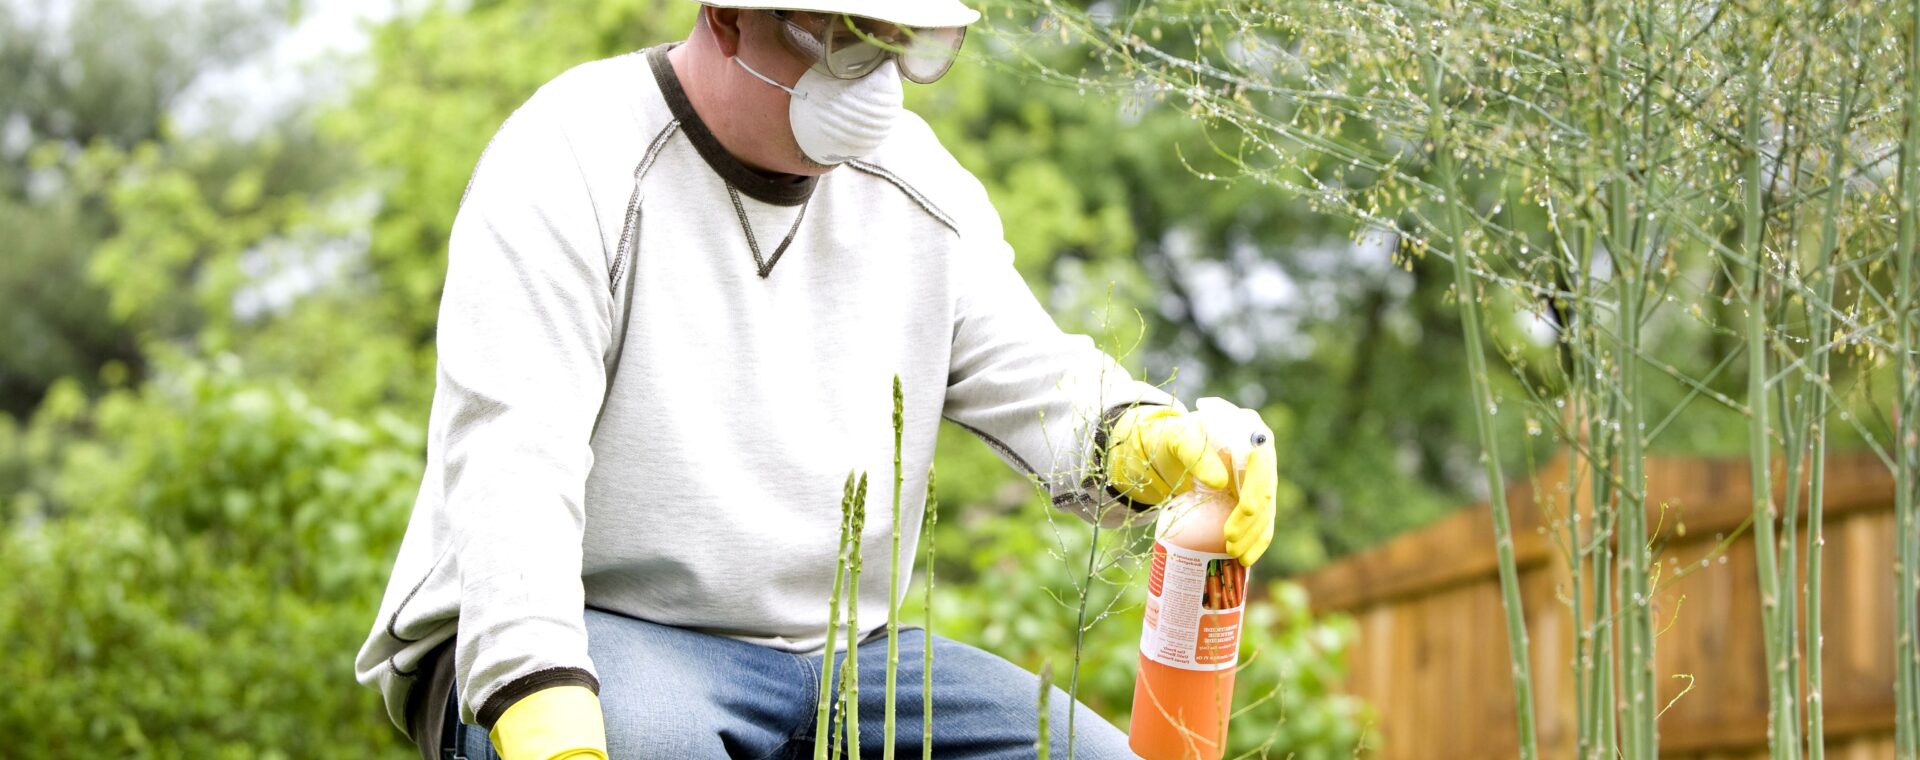 I pesticidi: perché evitarli?